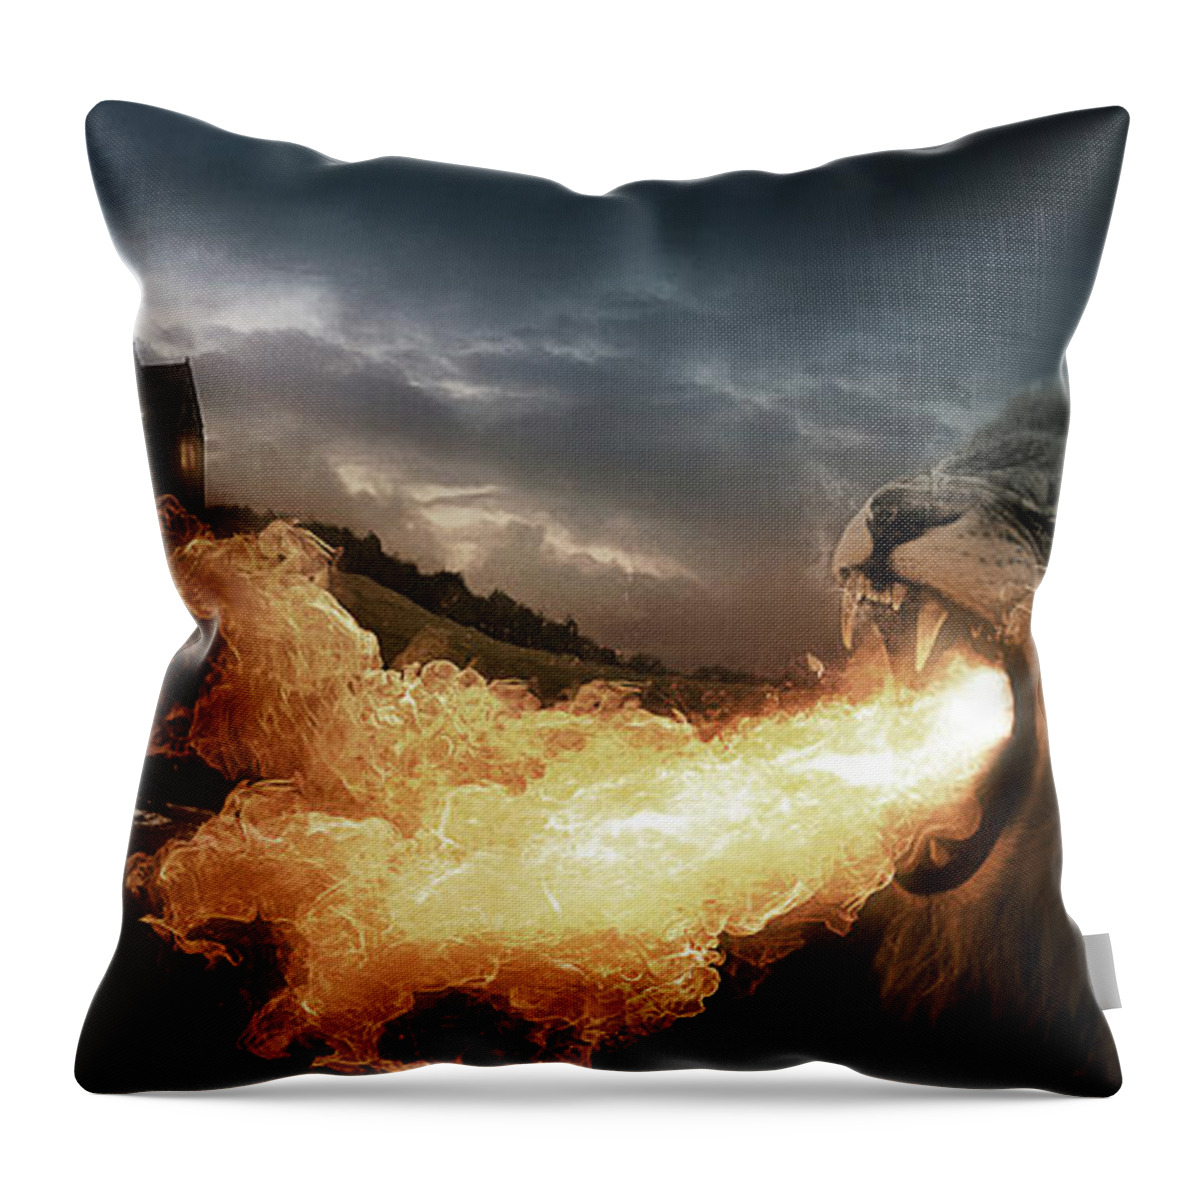 Lion Throw Pillow featuring the digital art Art - Lion of Fire by Matthias Zegveld